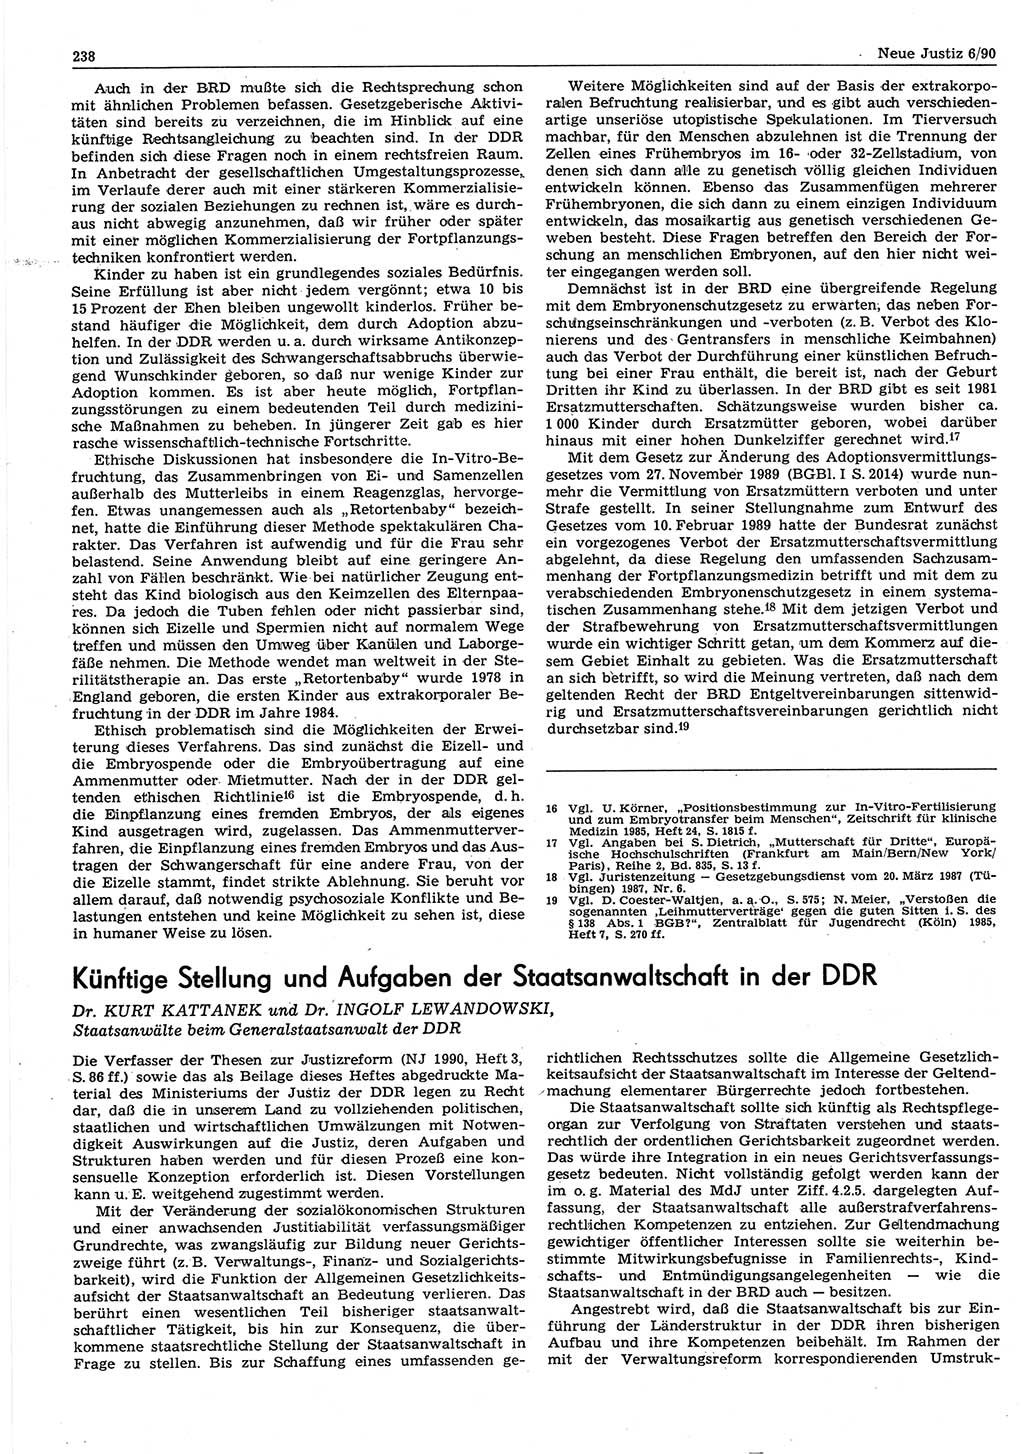 Neue Justiz (NJ), Zeitschrift für Rechtsetzung und Rechtsanwendung [Deutsche Demokratische Republik (DDR)], 44. Jahrgang 1990, Seite 238 (NJ DDR 1990, S. 238)